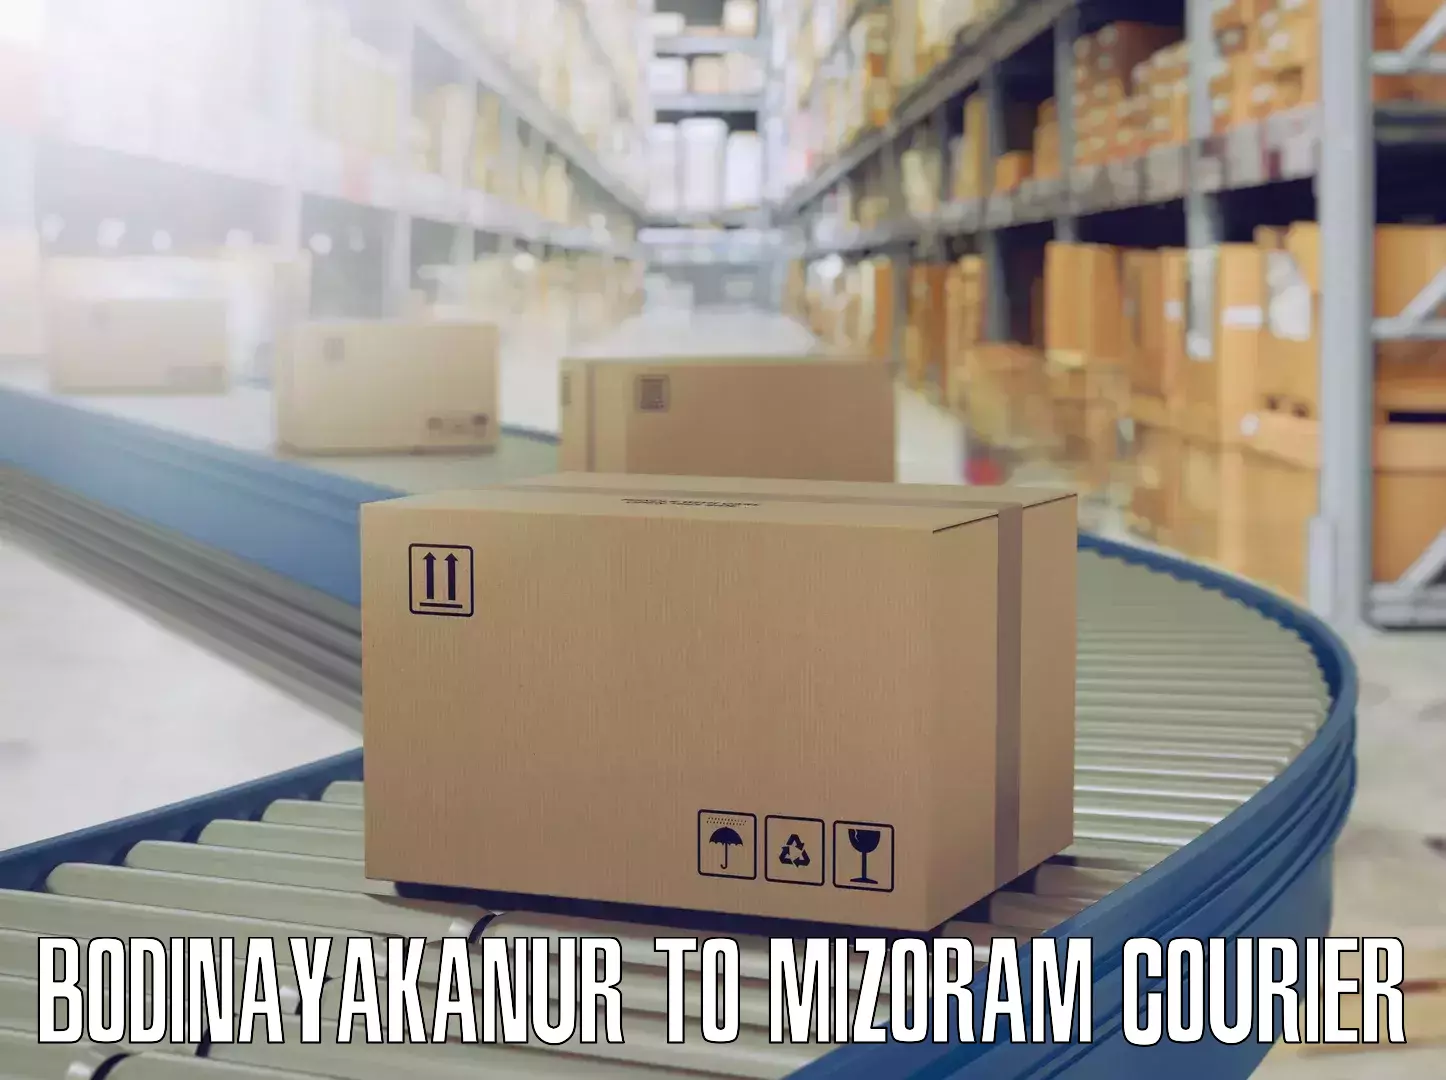 Household goods movers Bodinayakanur to Saitual